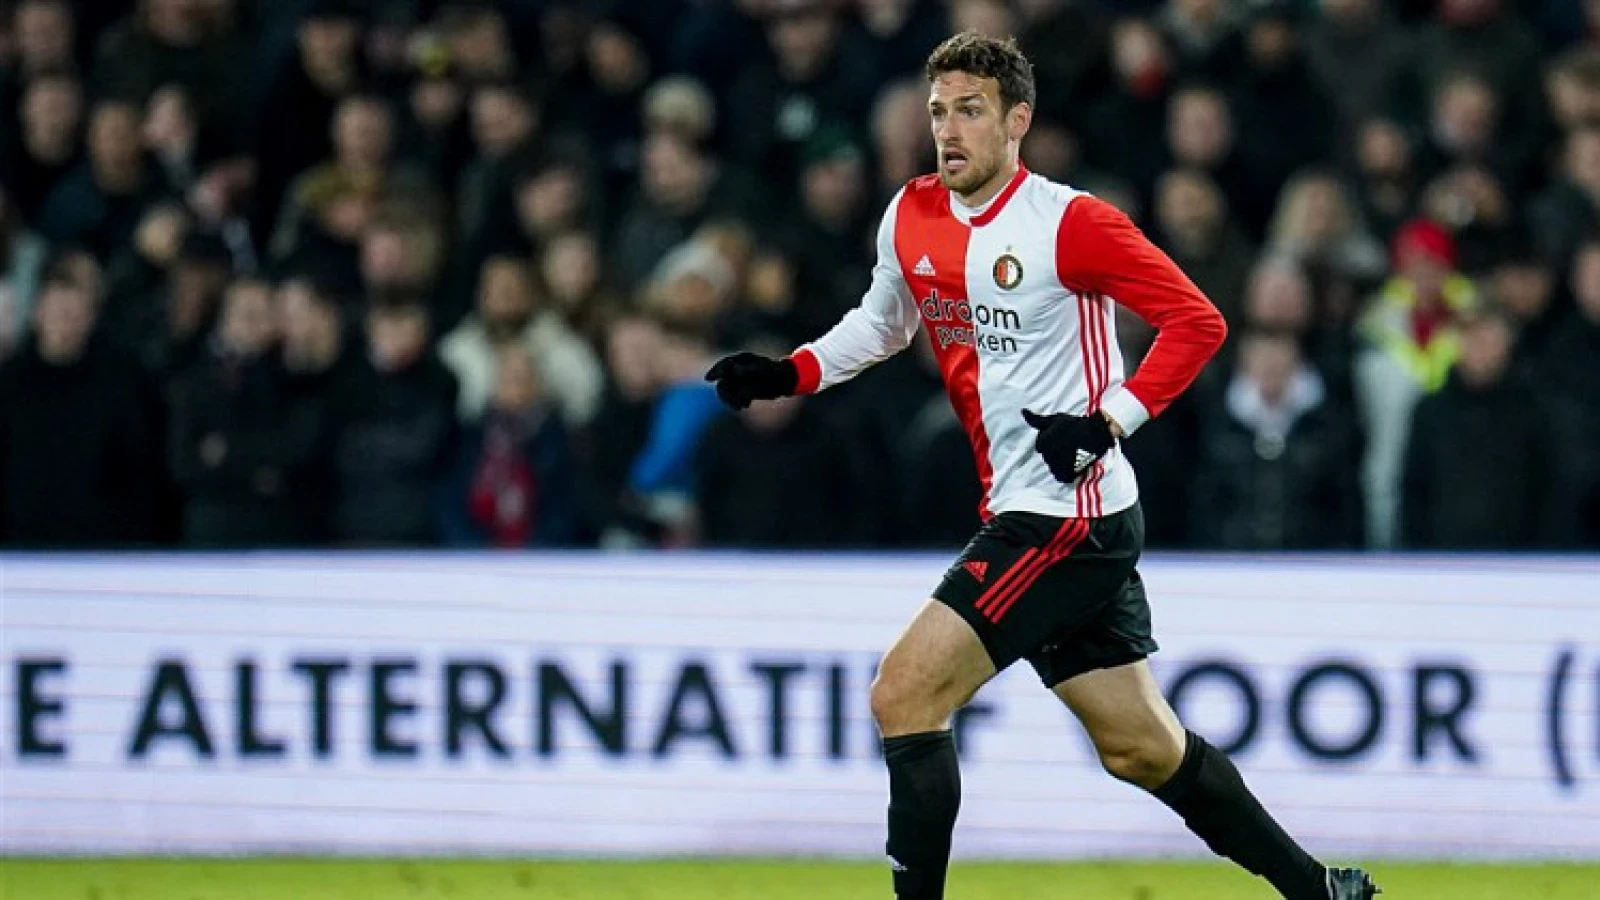 OFFICIEEL | Eric Botteghin tekent nieuw contract bij Feyenoord